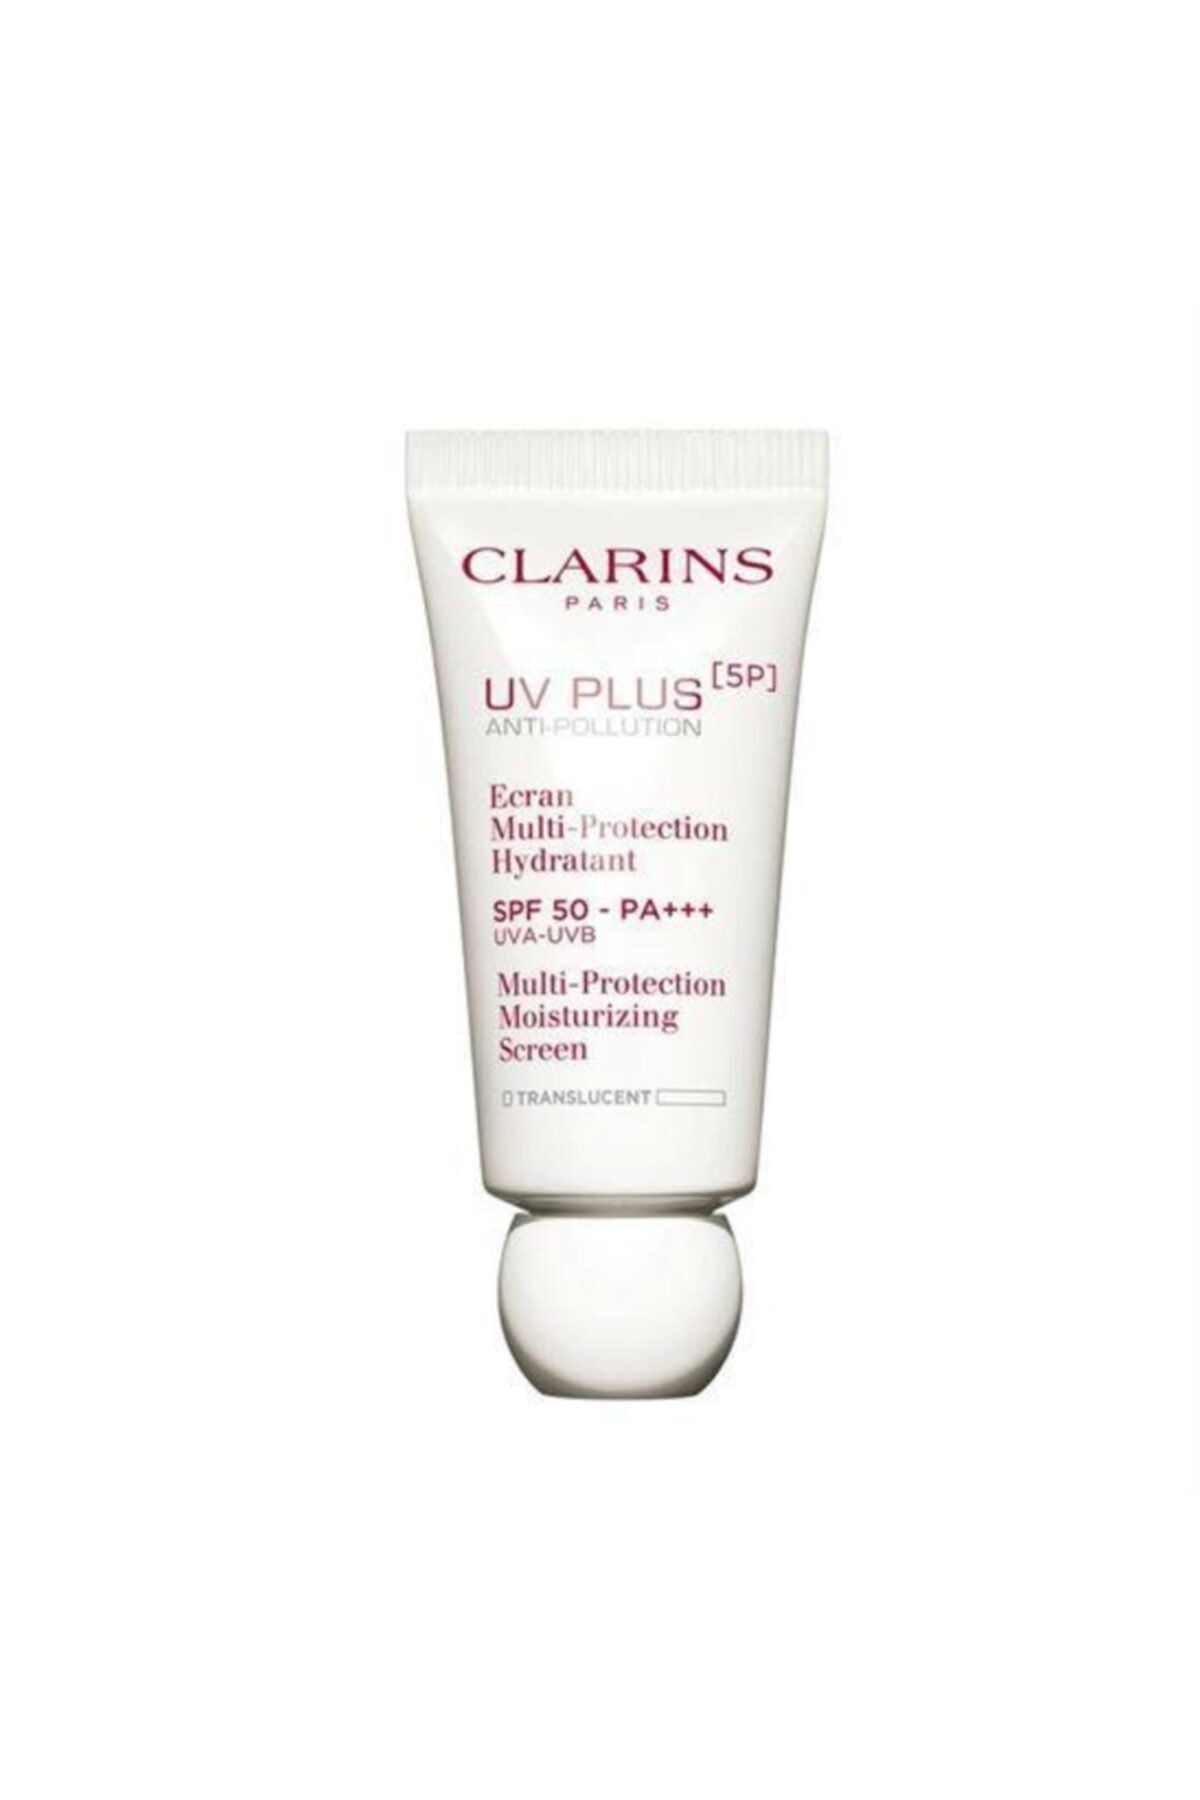 Clarins Uv Plus (5p) Translucent Spf50 30 Ml